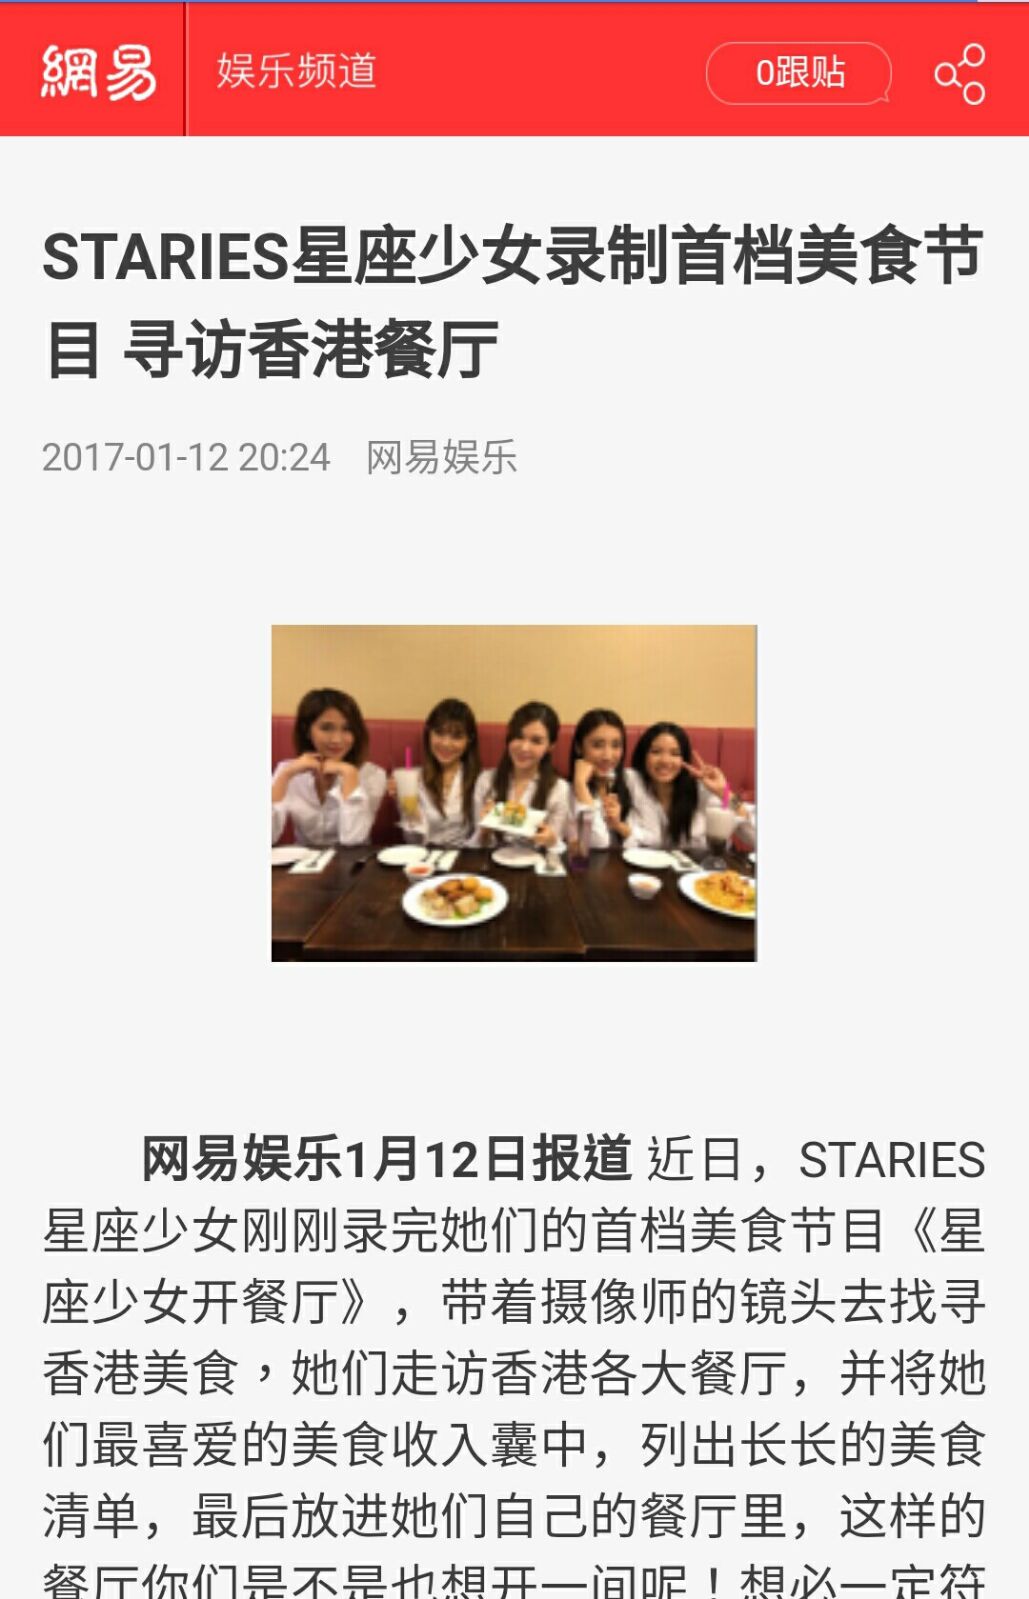 演藝人星座少女Staries 之媒體報導: STARIES星座少女录制首档美食节目 寻访香港餐厅